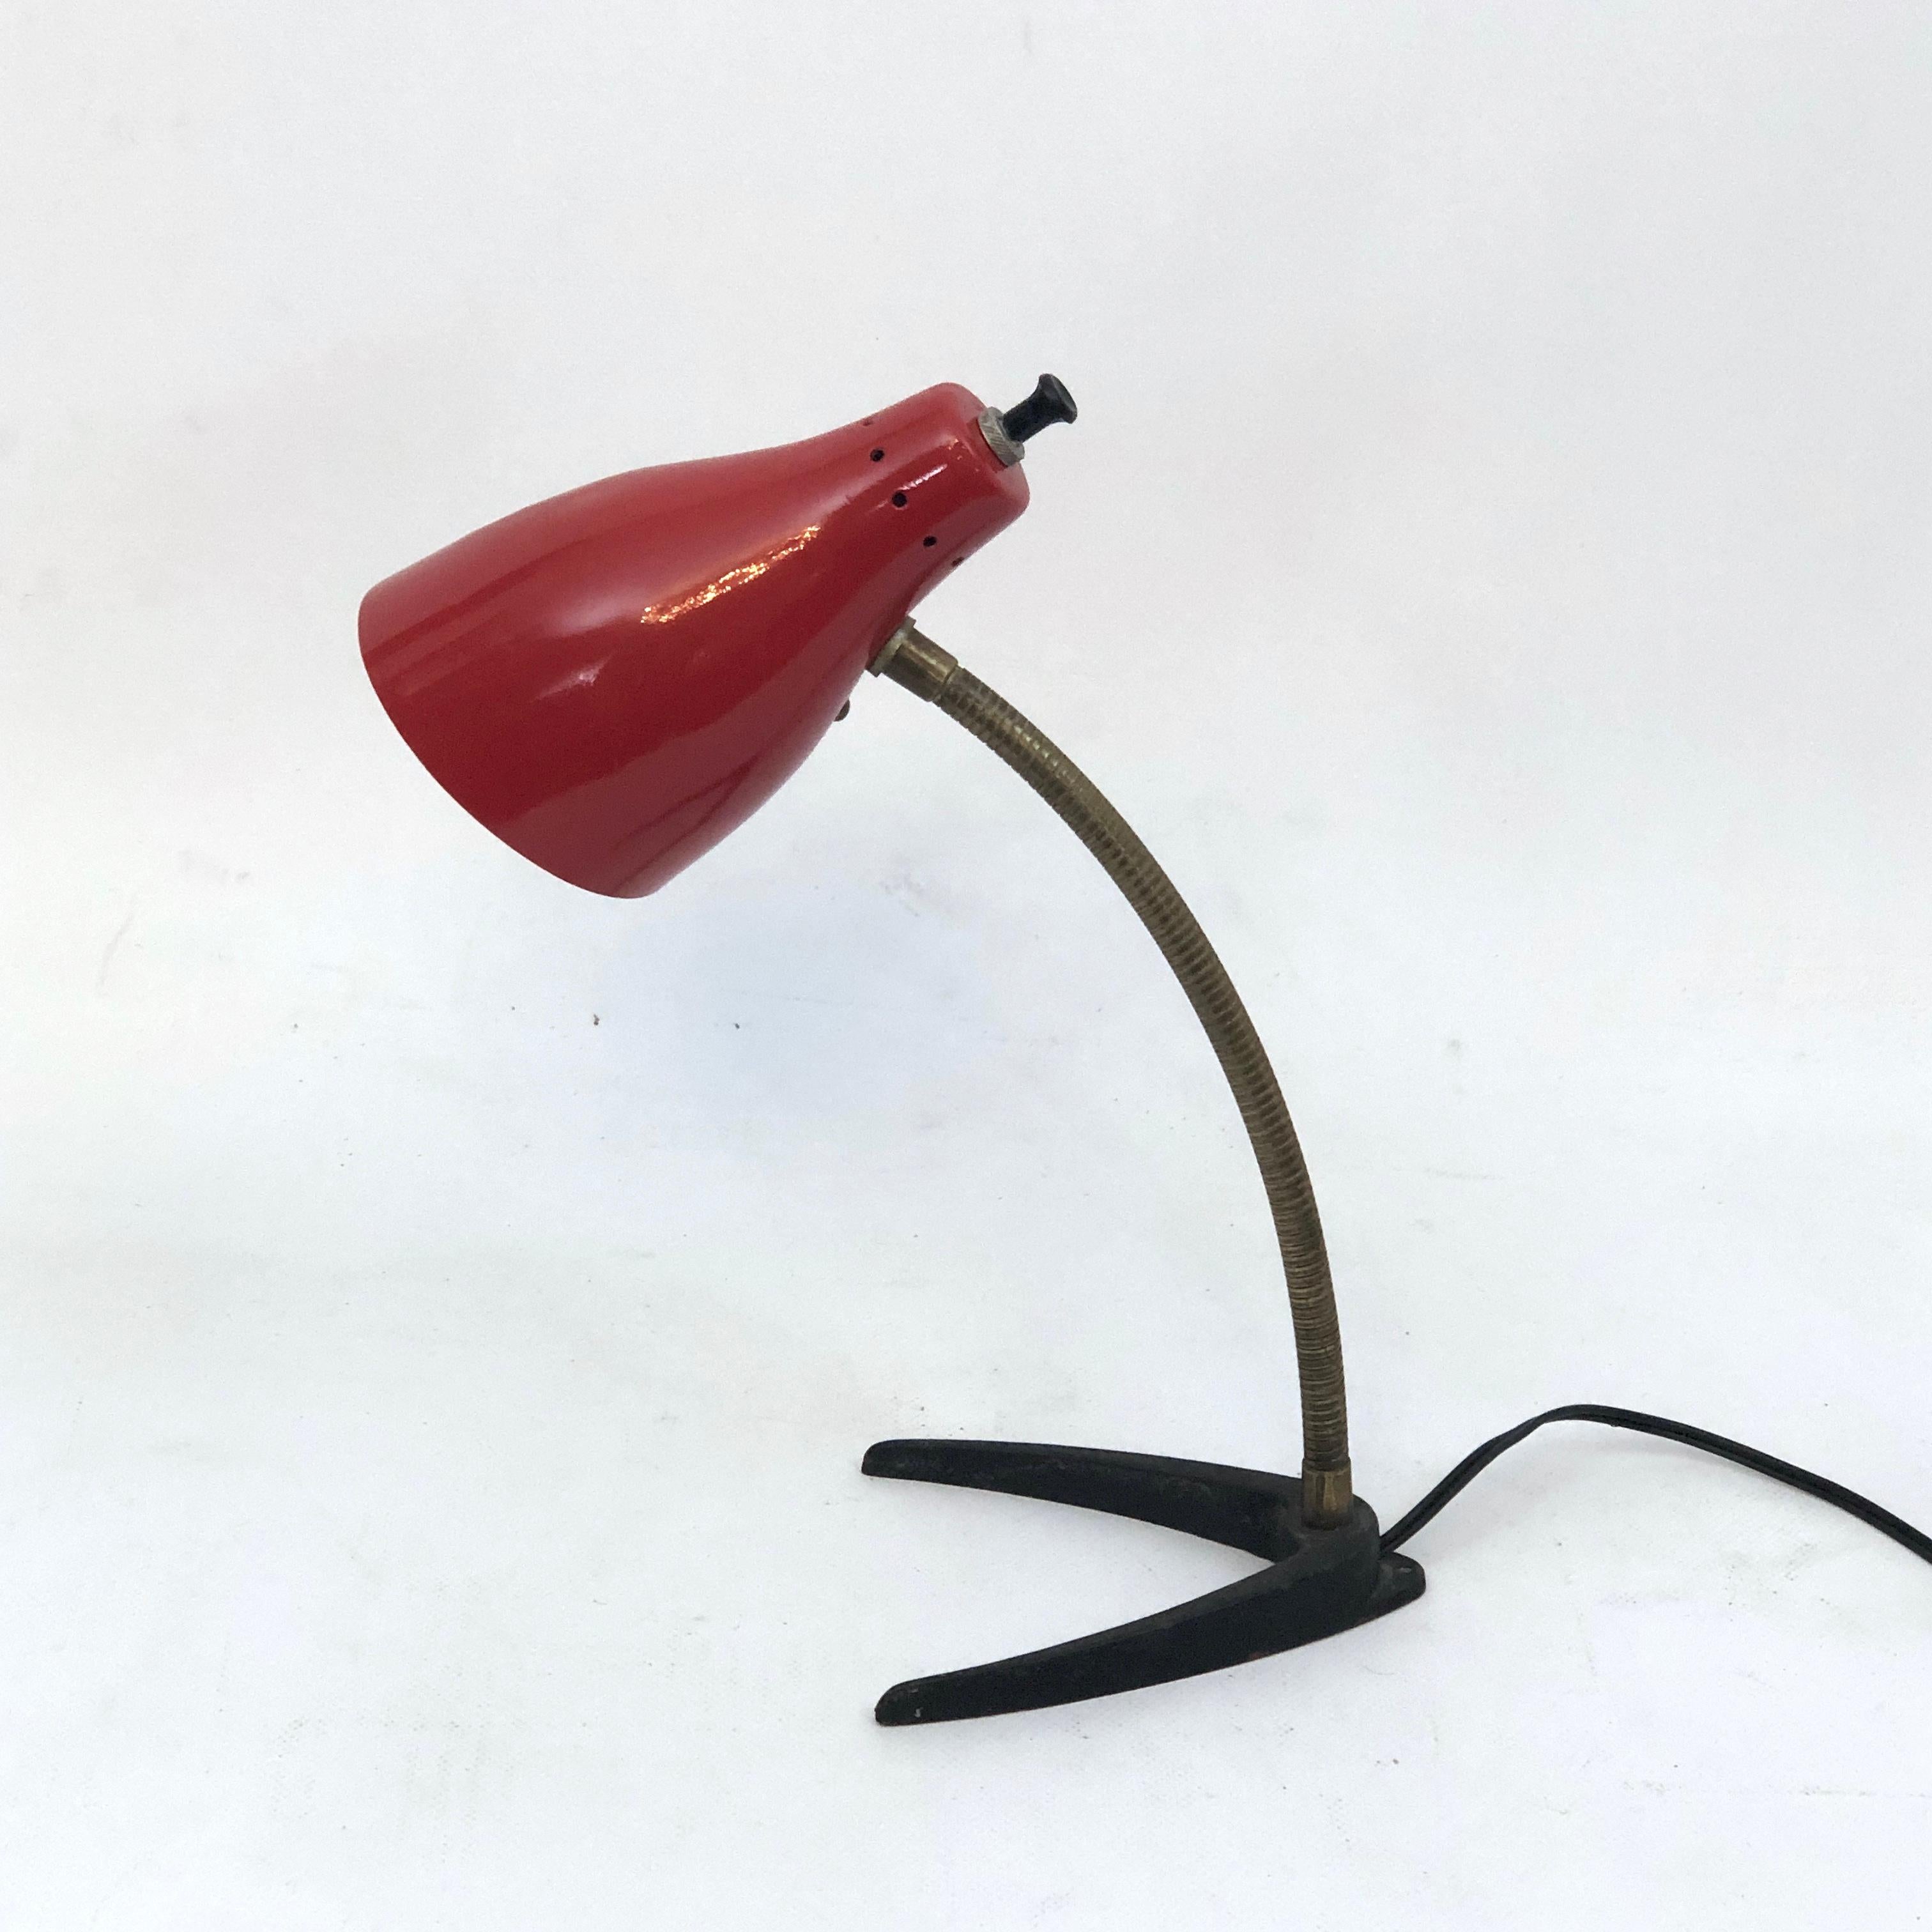 Très bon état vintage pour cette lampe de table produite en Italie dans les années 50 et réalisée en laque rouge et laiton. Fonctionne entièrement avec la norme européenne, adaptable sur demande à la norme américaine.